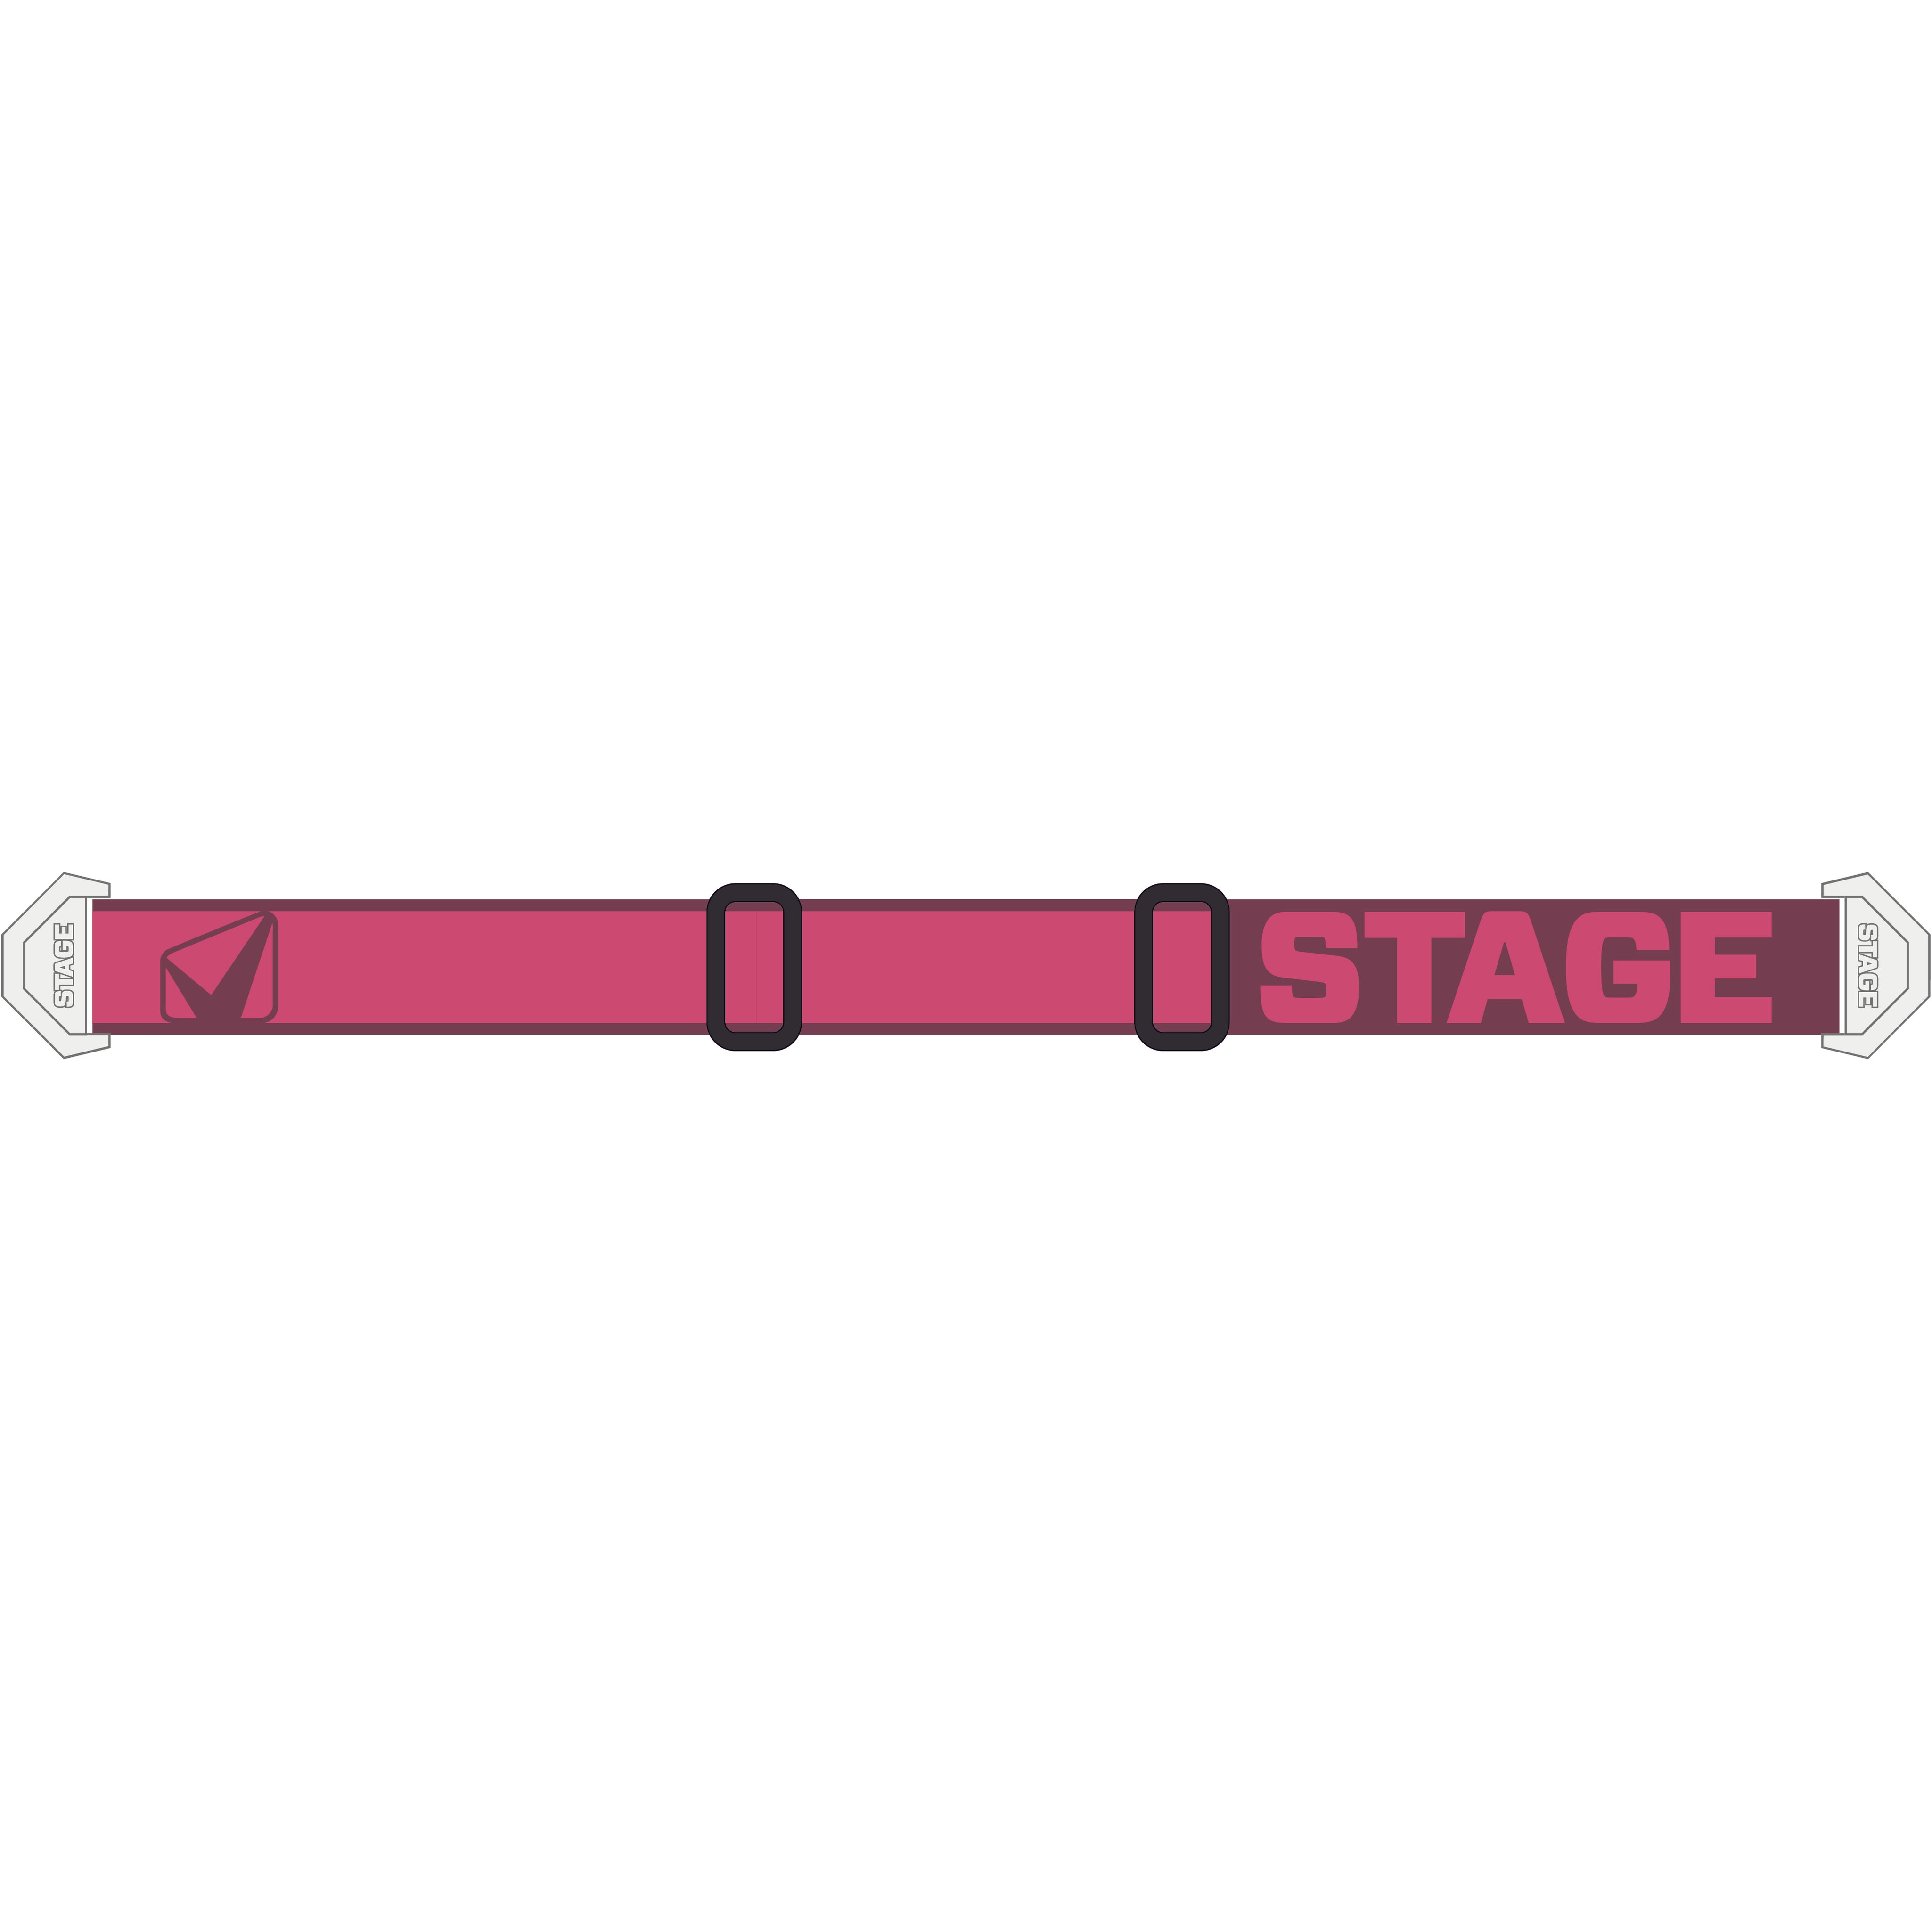 StageStuntStrap-Rose.jpg